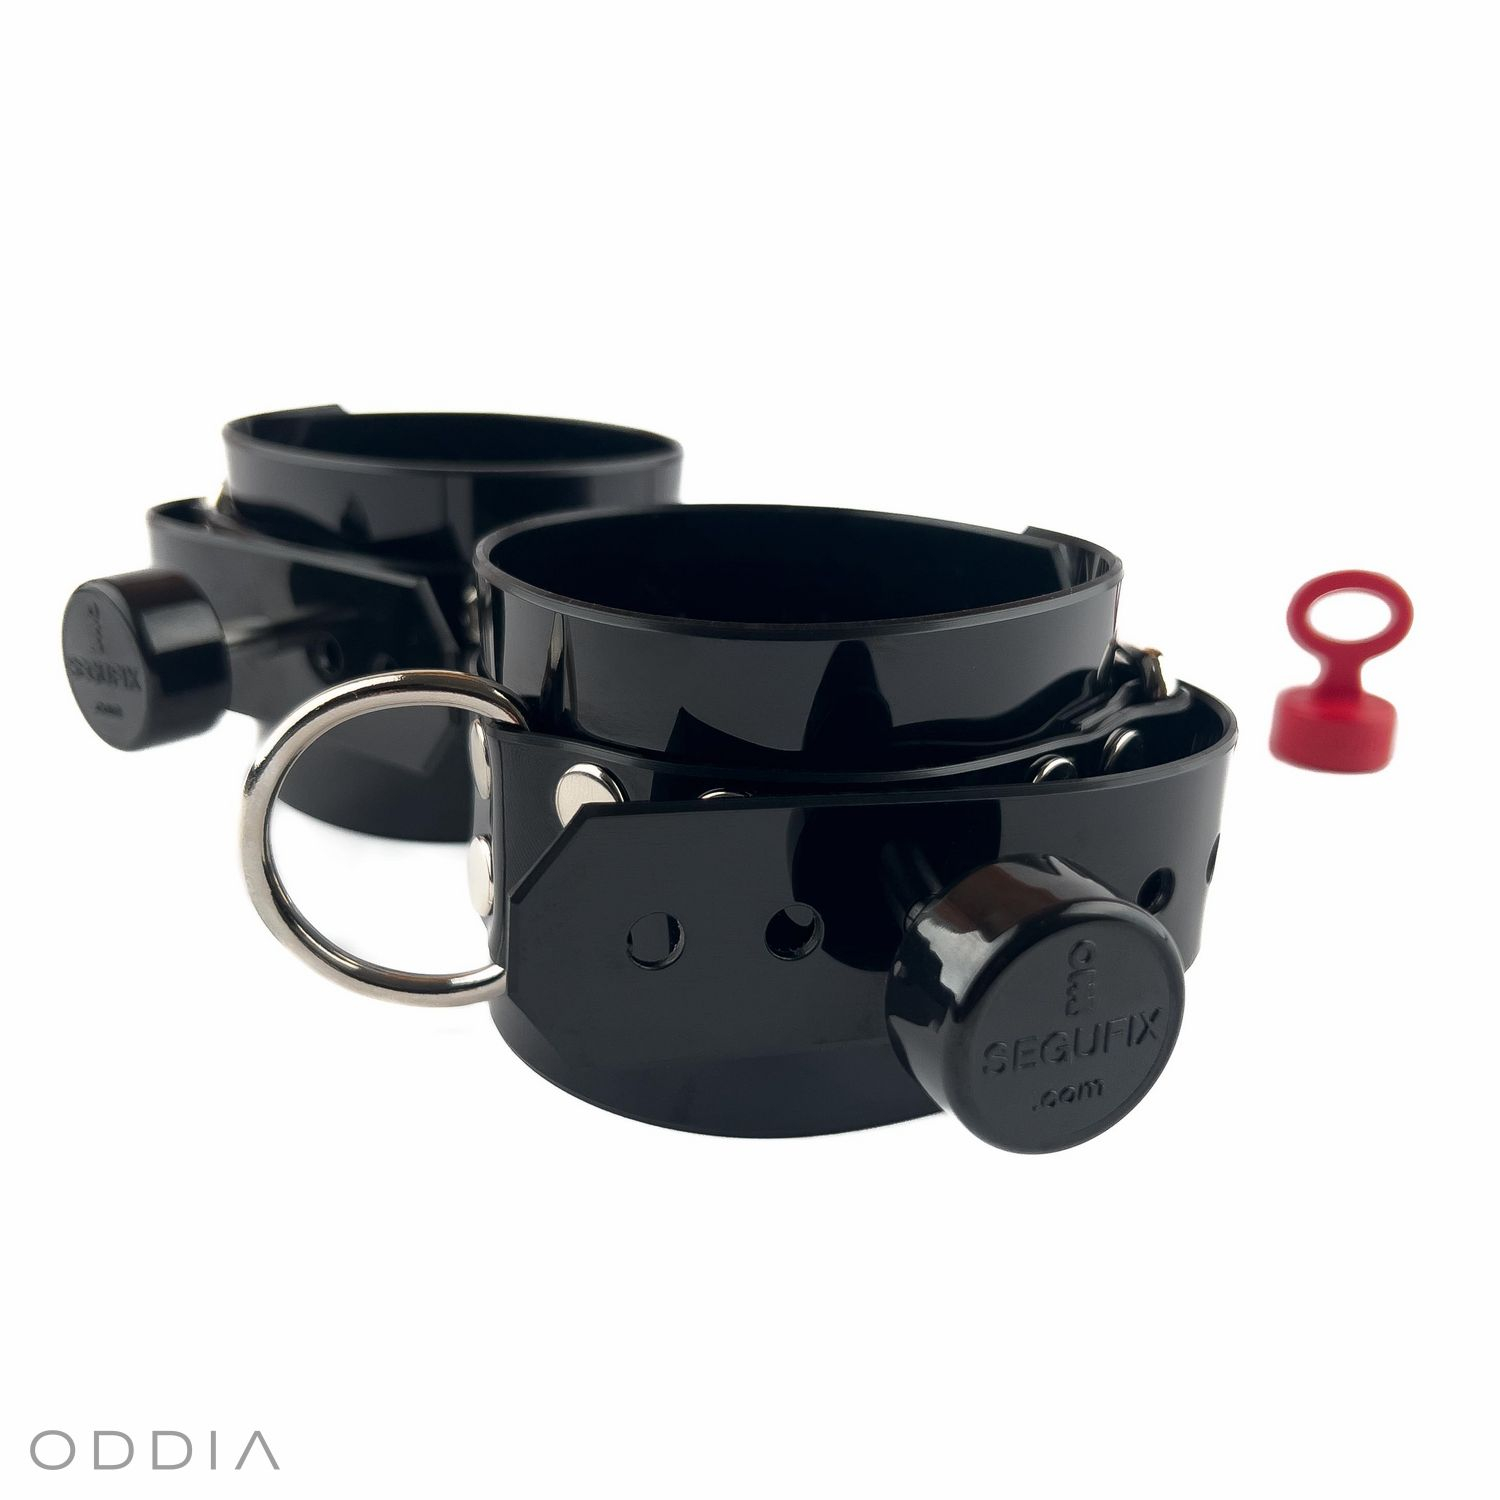 Черные запираемые БДСМ наручники с магнитными замками Segufix и качественной металлической отделкой серебристого цвета.